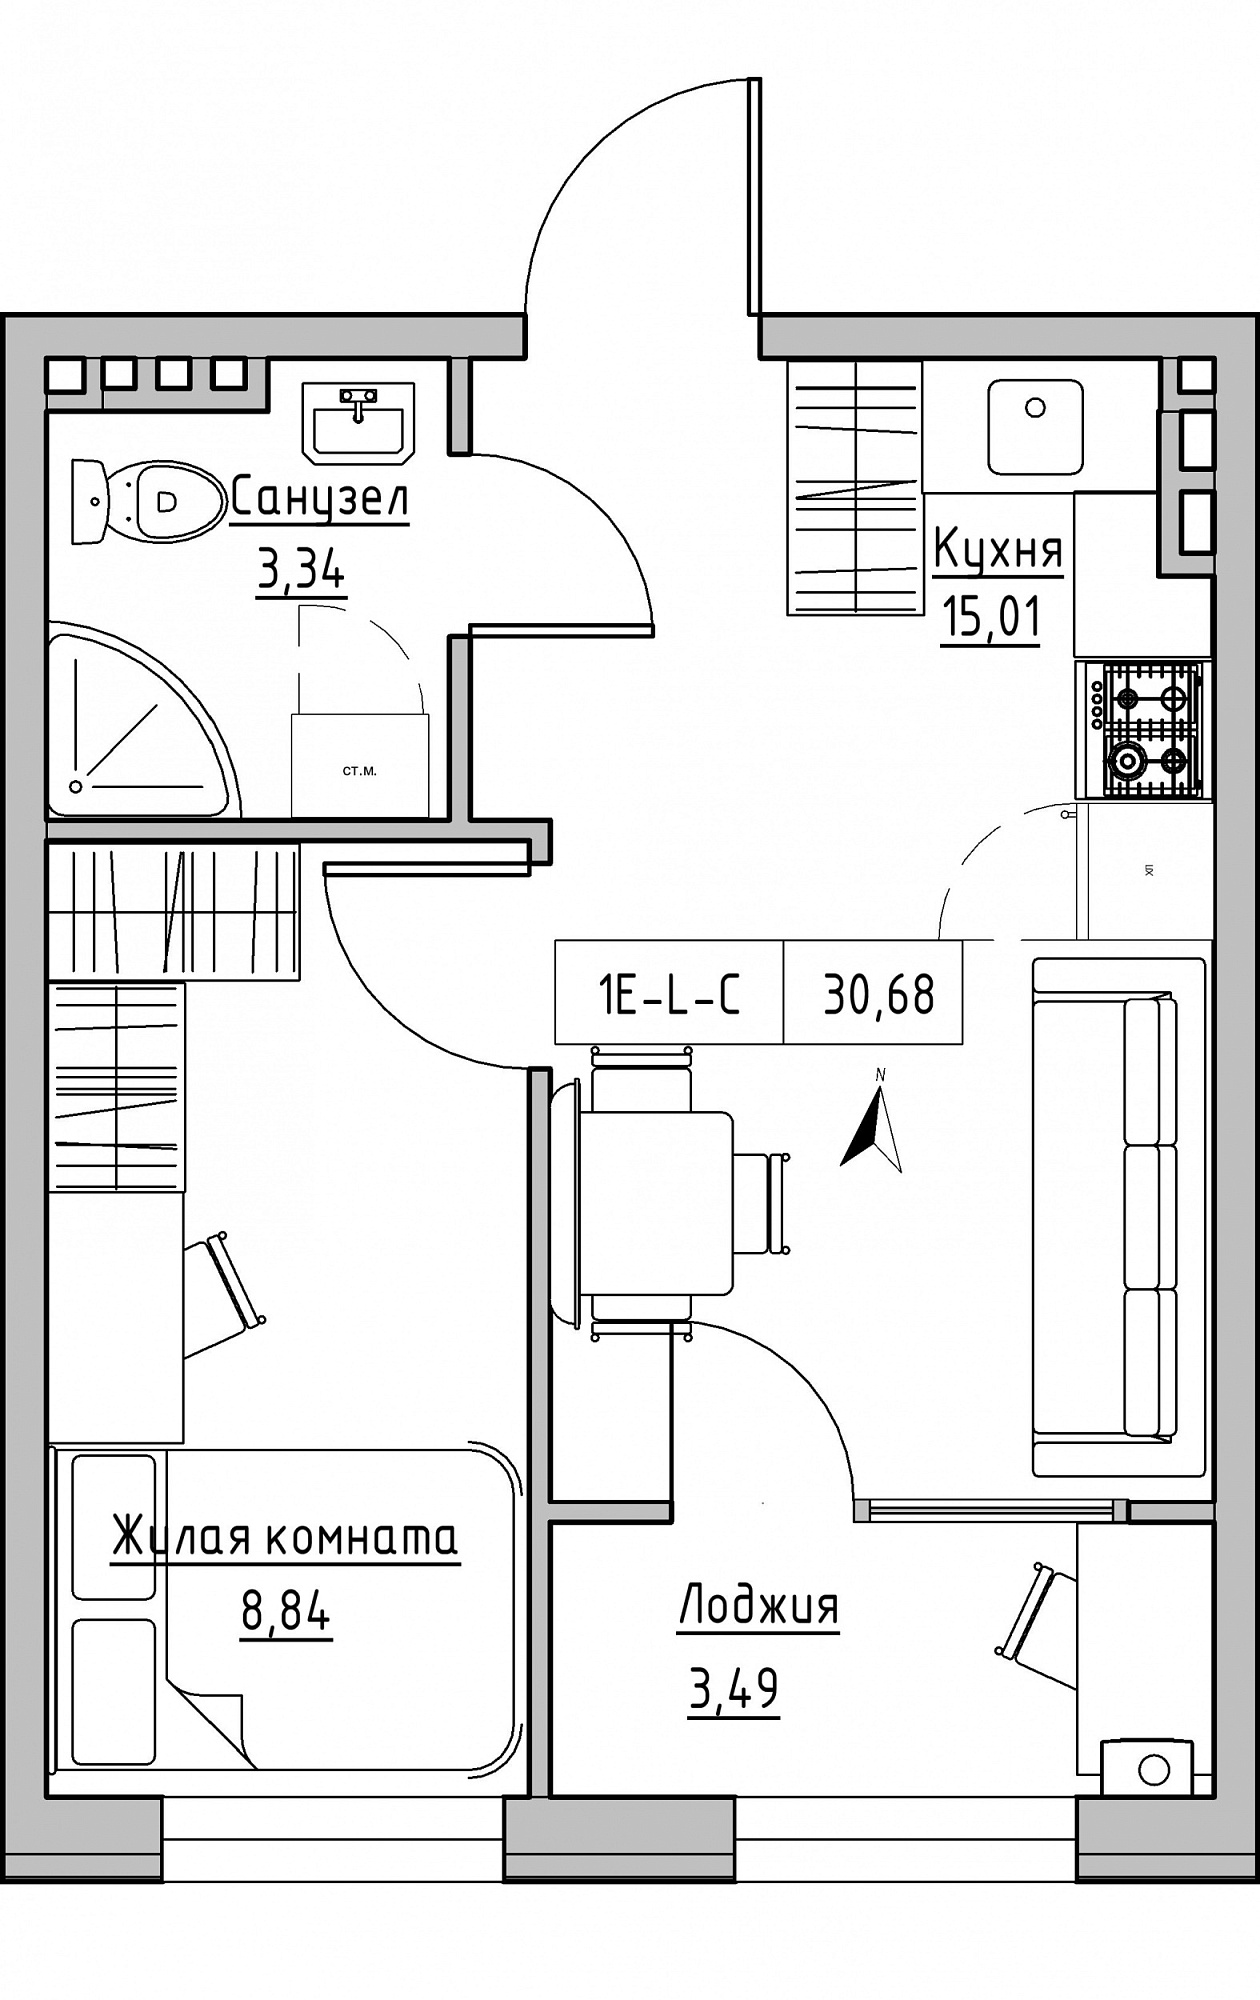 Планировка 1-к квартира площей 30.68м2, KS-024-03/0008.